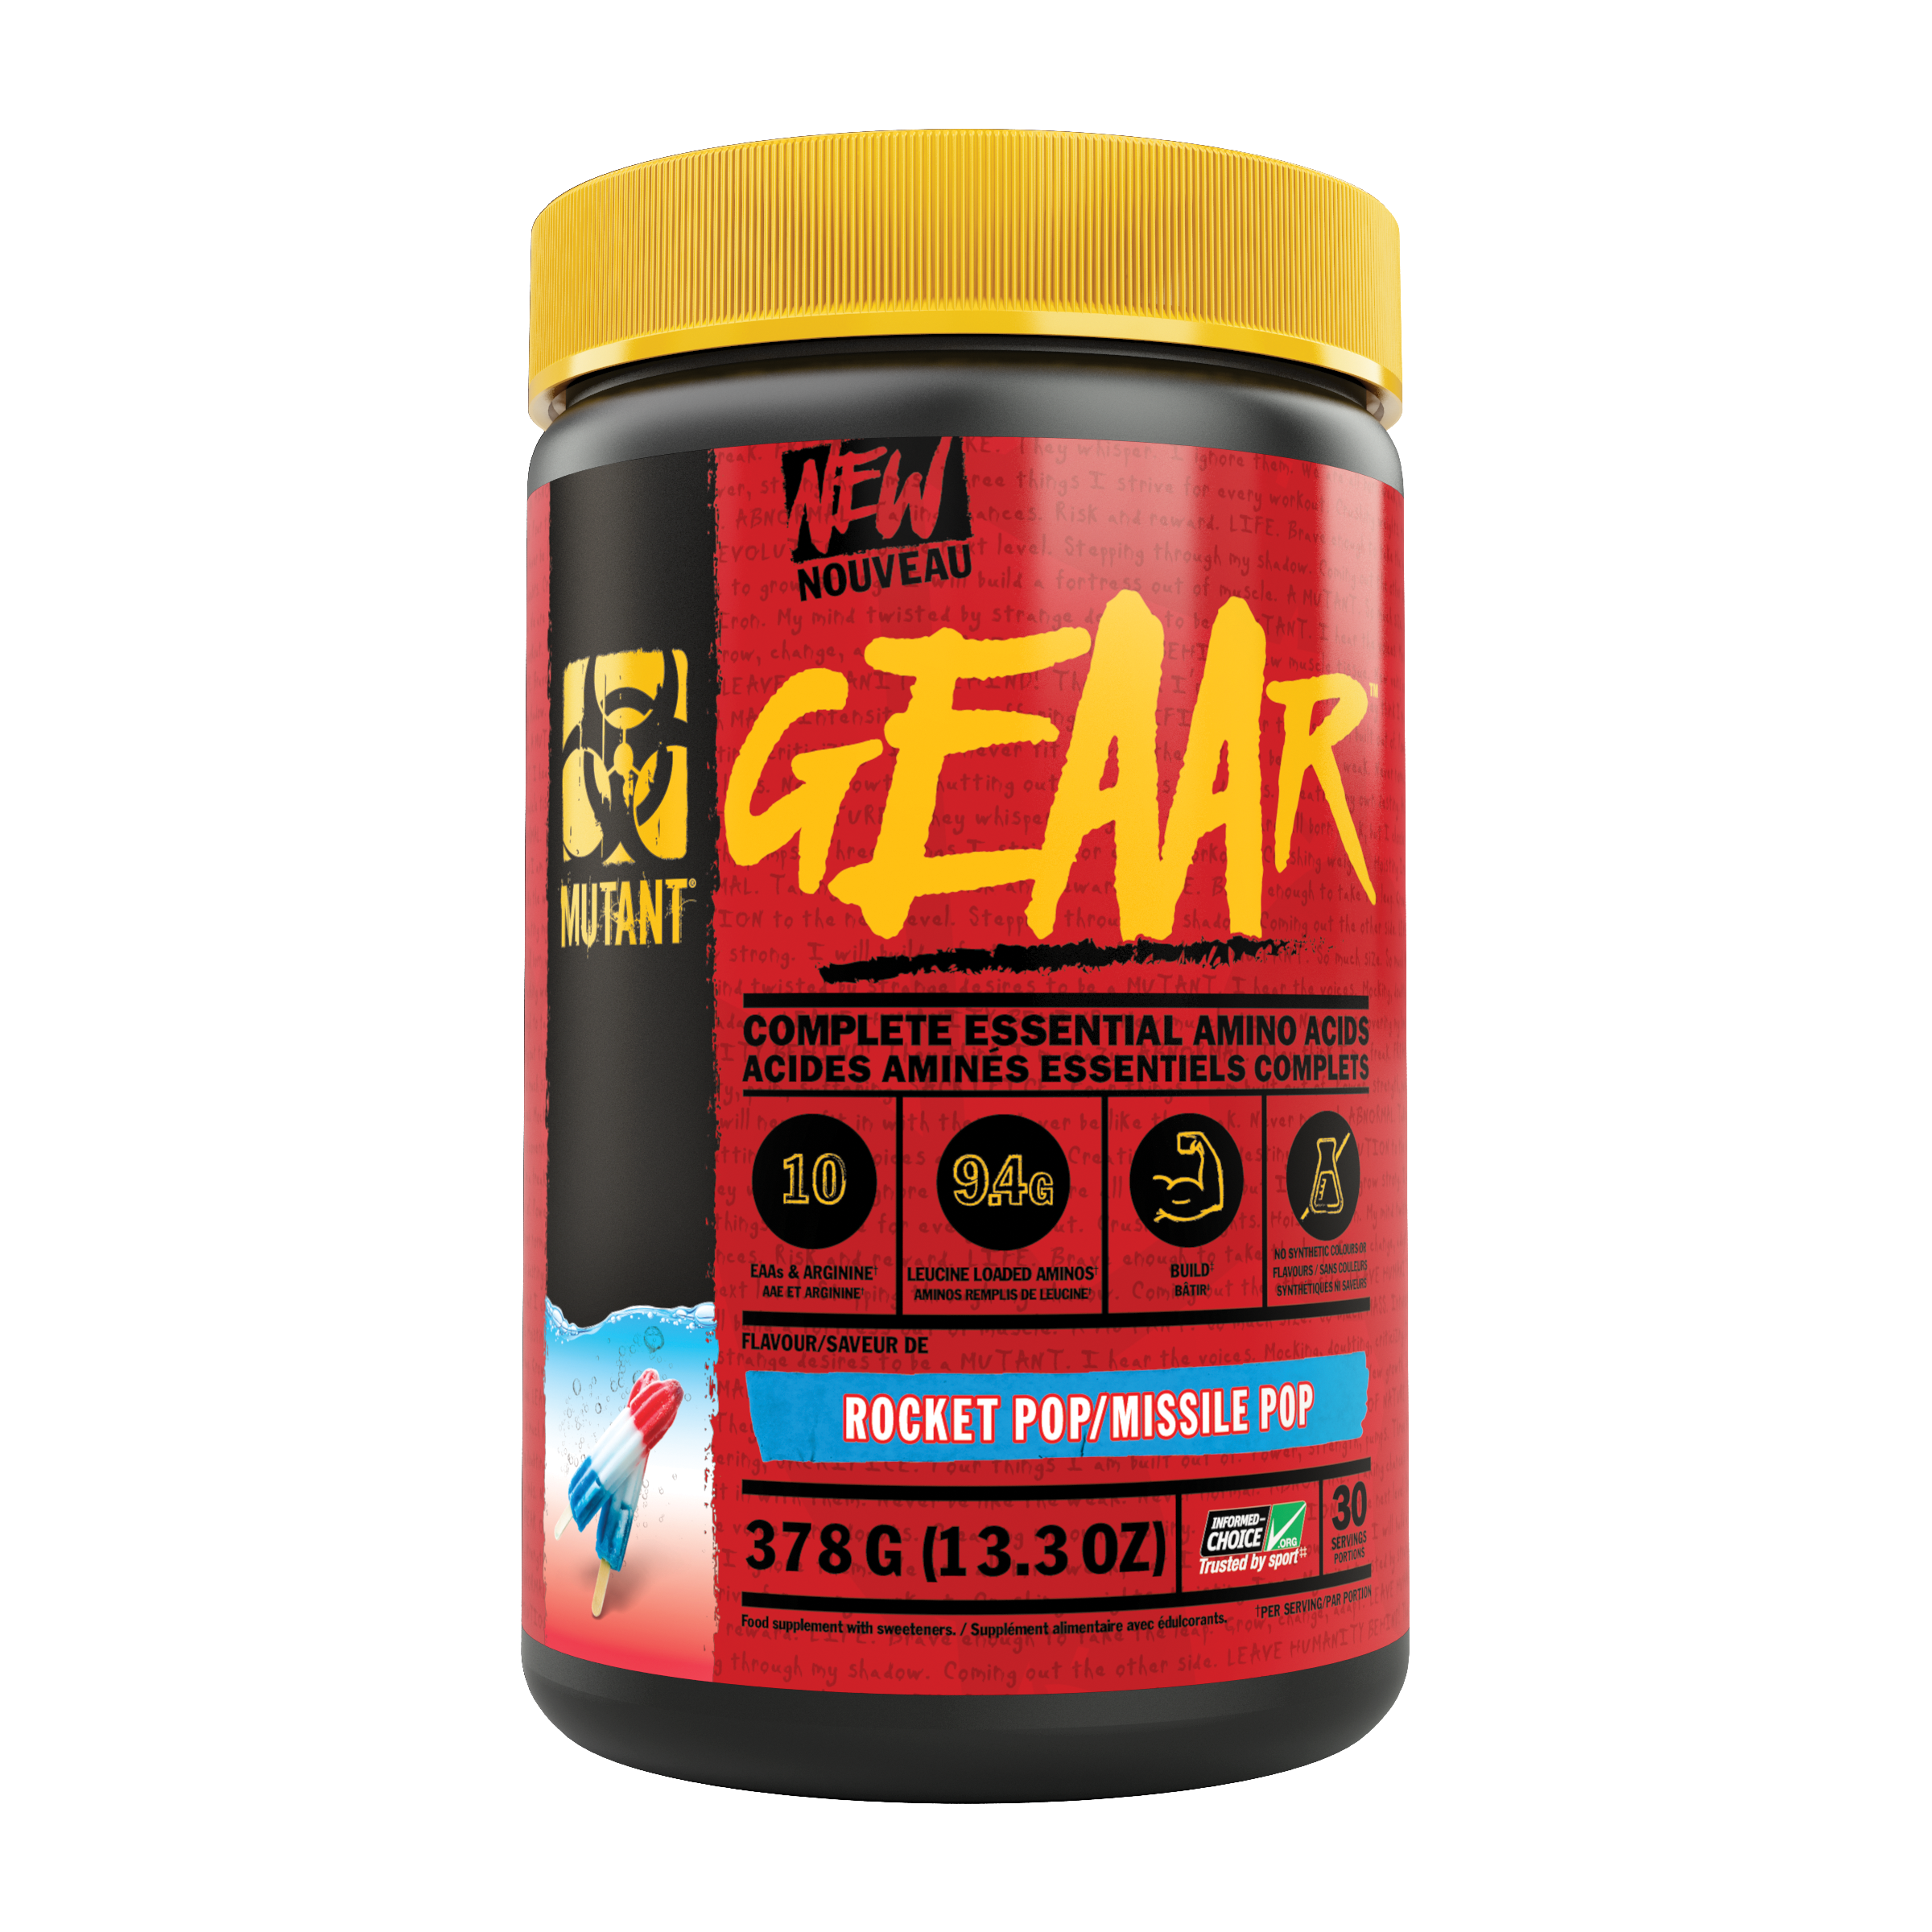 MUTANT GEAAR EAAs Complete Essential Amino Acids (30 servings) BCAAs and Amino Acids Rocket Pop/Missile Pop Mutant mutant-geaar-completely-essential-amino-acids-30-servings